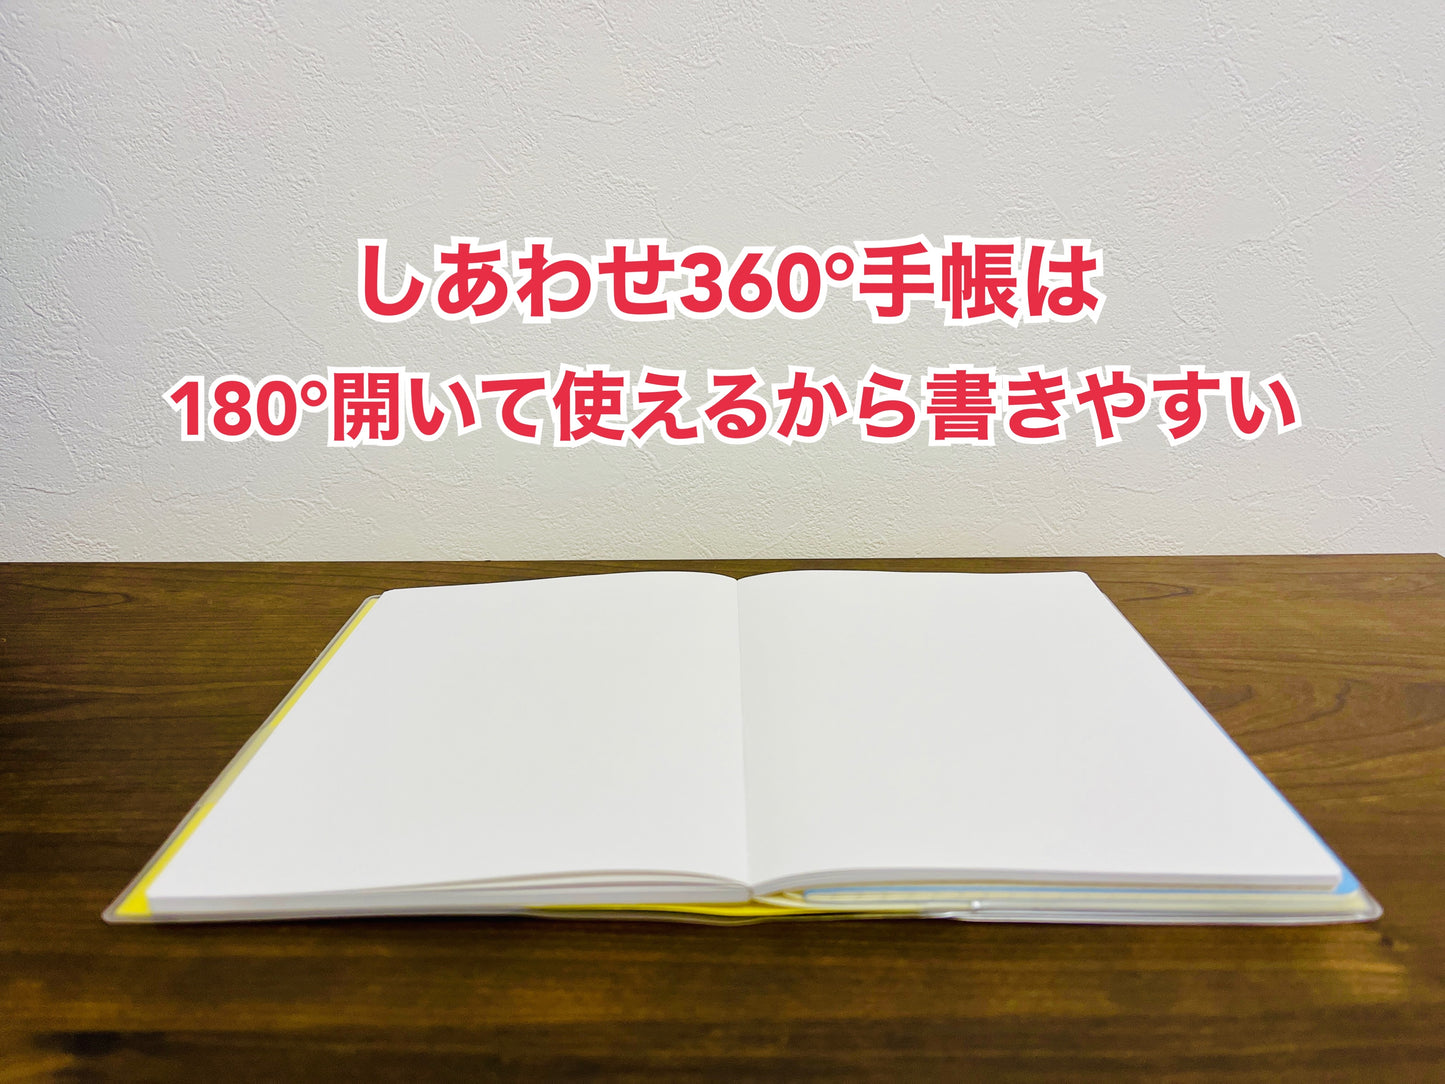 [Có kèm bìa rời gốc] Sổ tay Hạnh phúc 360 độ năm 2024 100 quyển (giá ưu đãi đặc biệt)